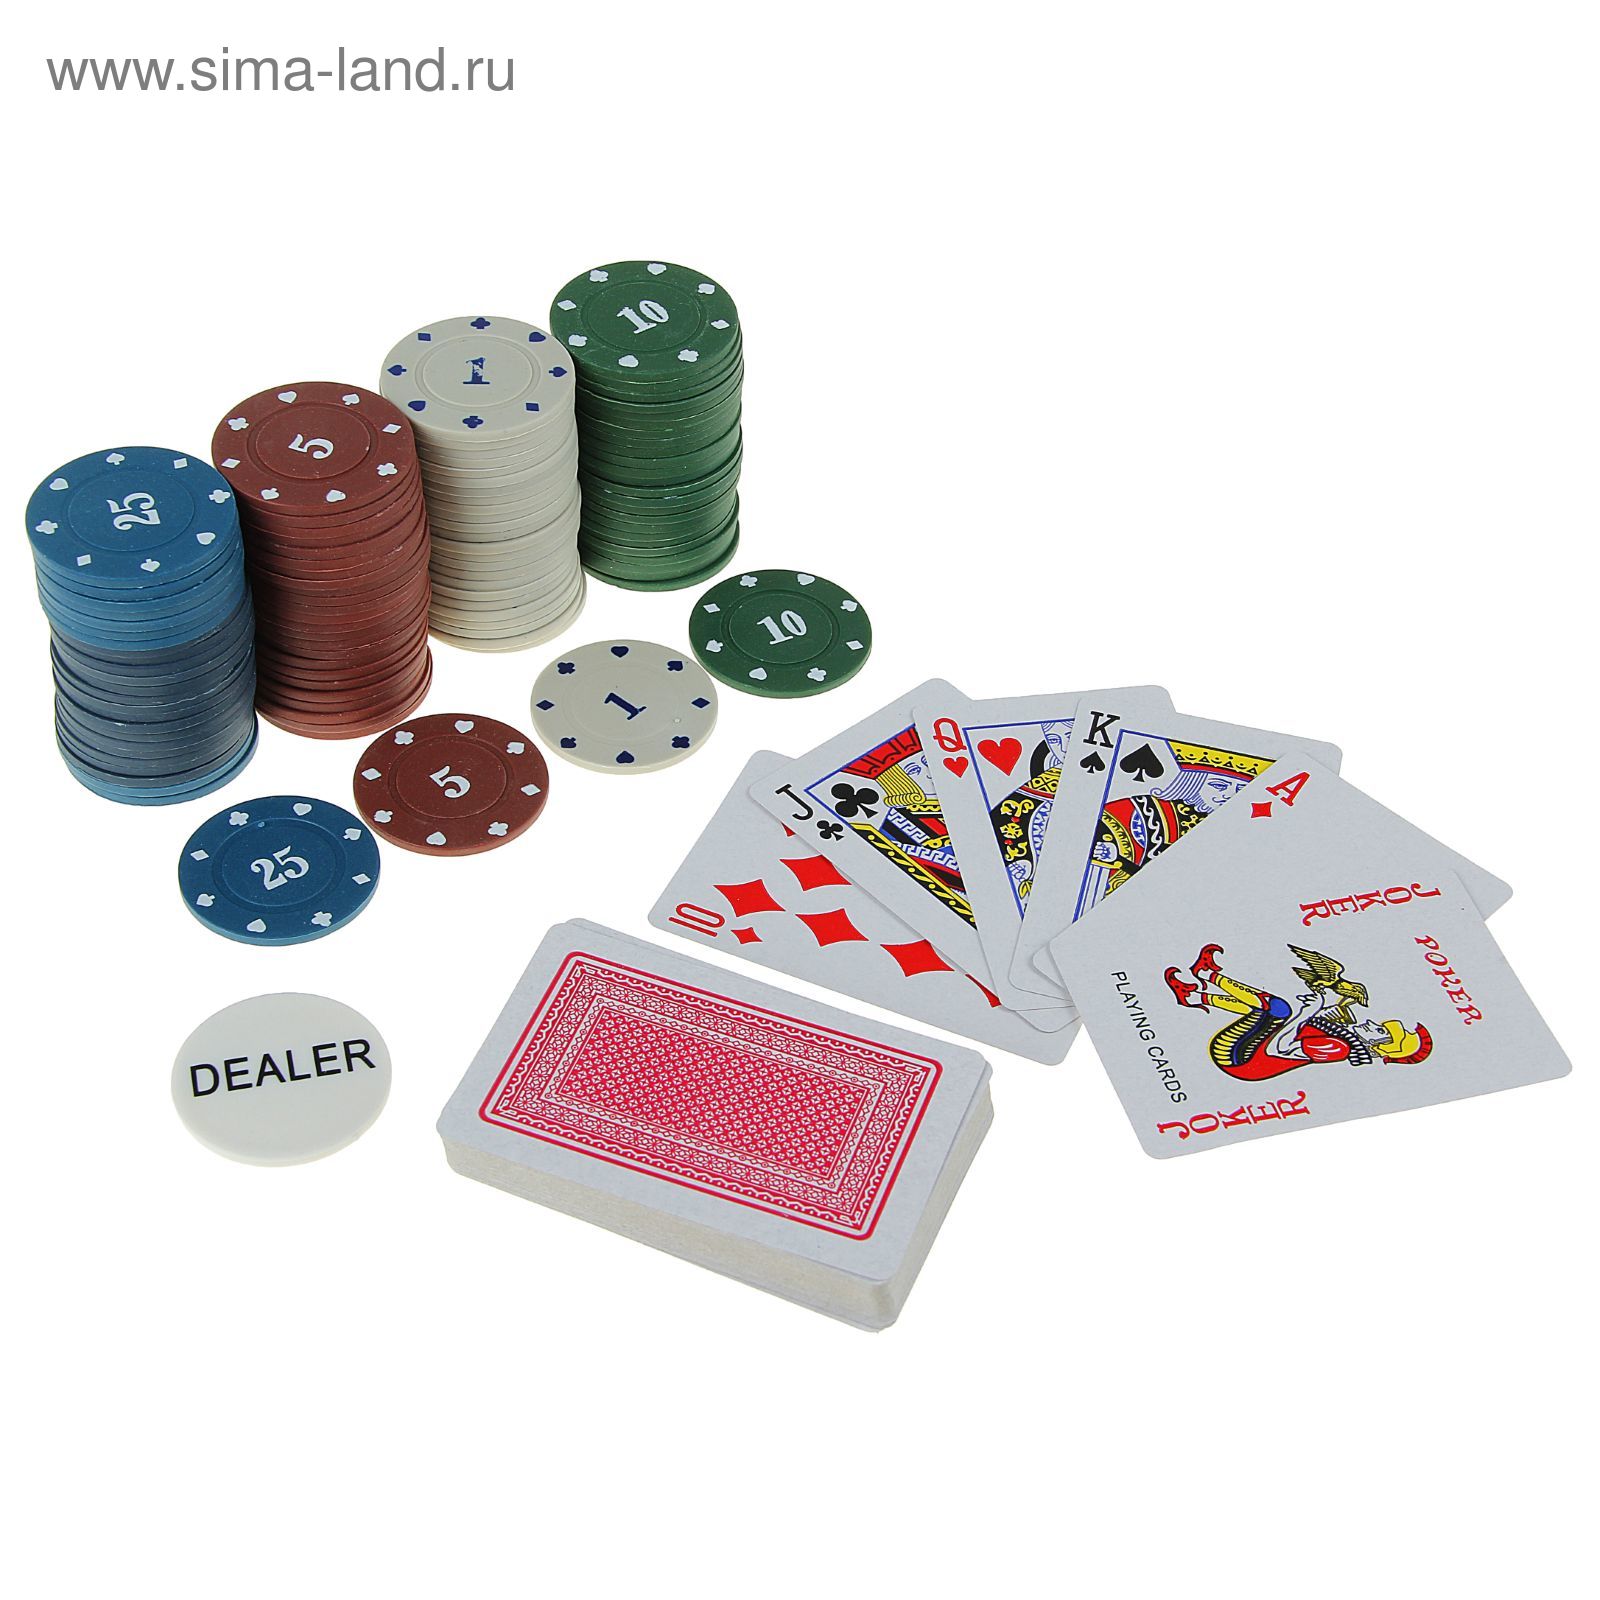 Набор для покера Professional Poker Chips: 100 фишек, 2 колоды карт по 54 шт., металлическая коробка